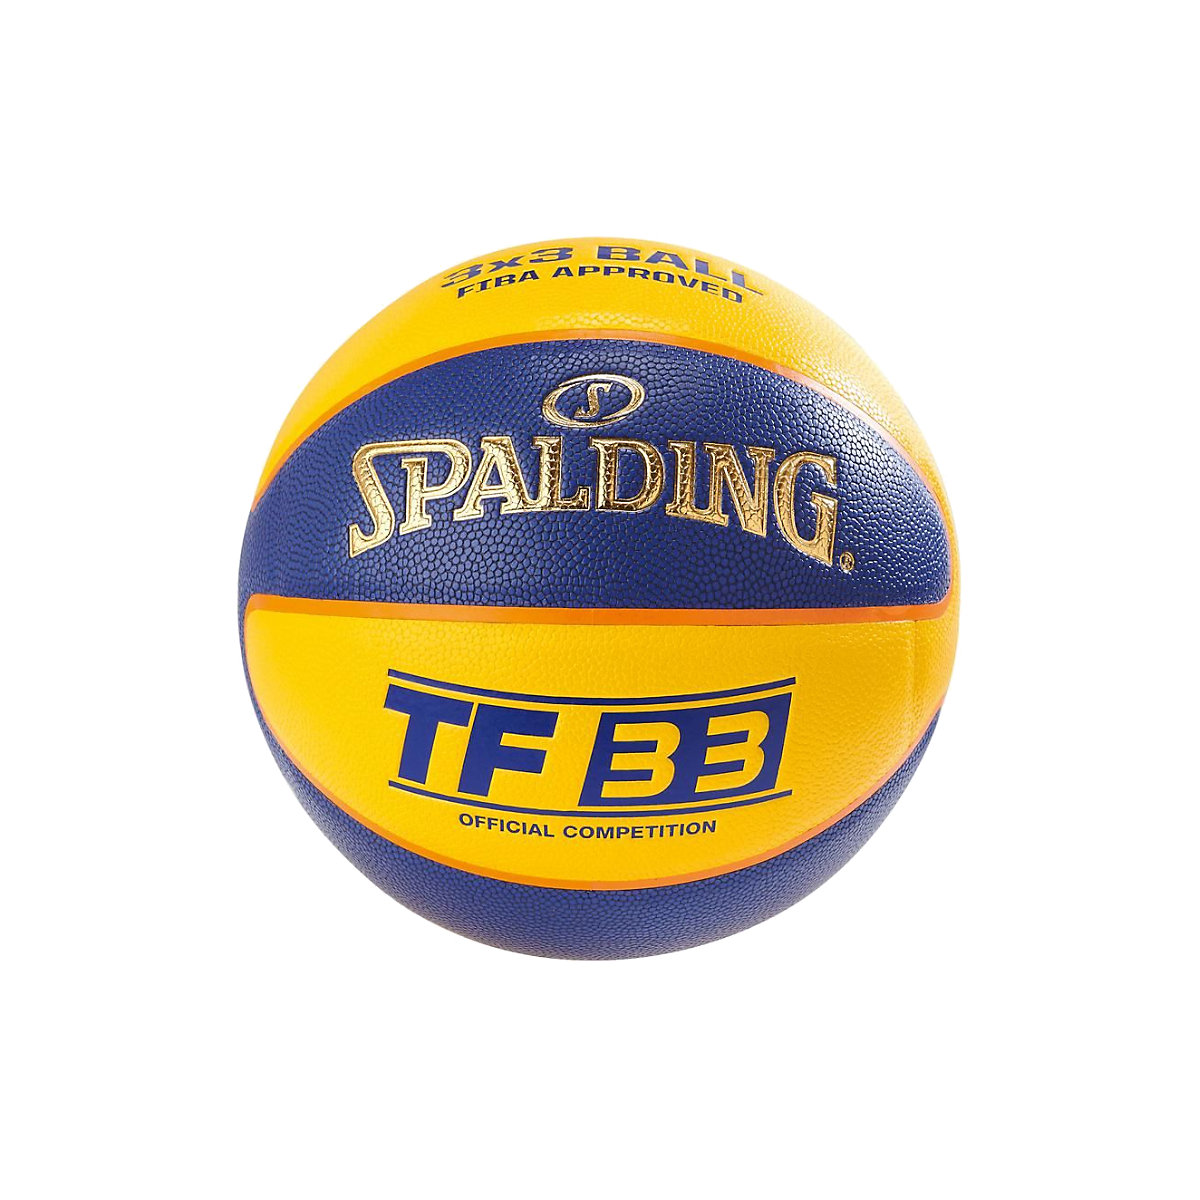 SPALDING Basketballbälle TF 33 In/Out Official Game Ball 76257Z Basketbälle für Kinder